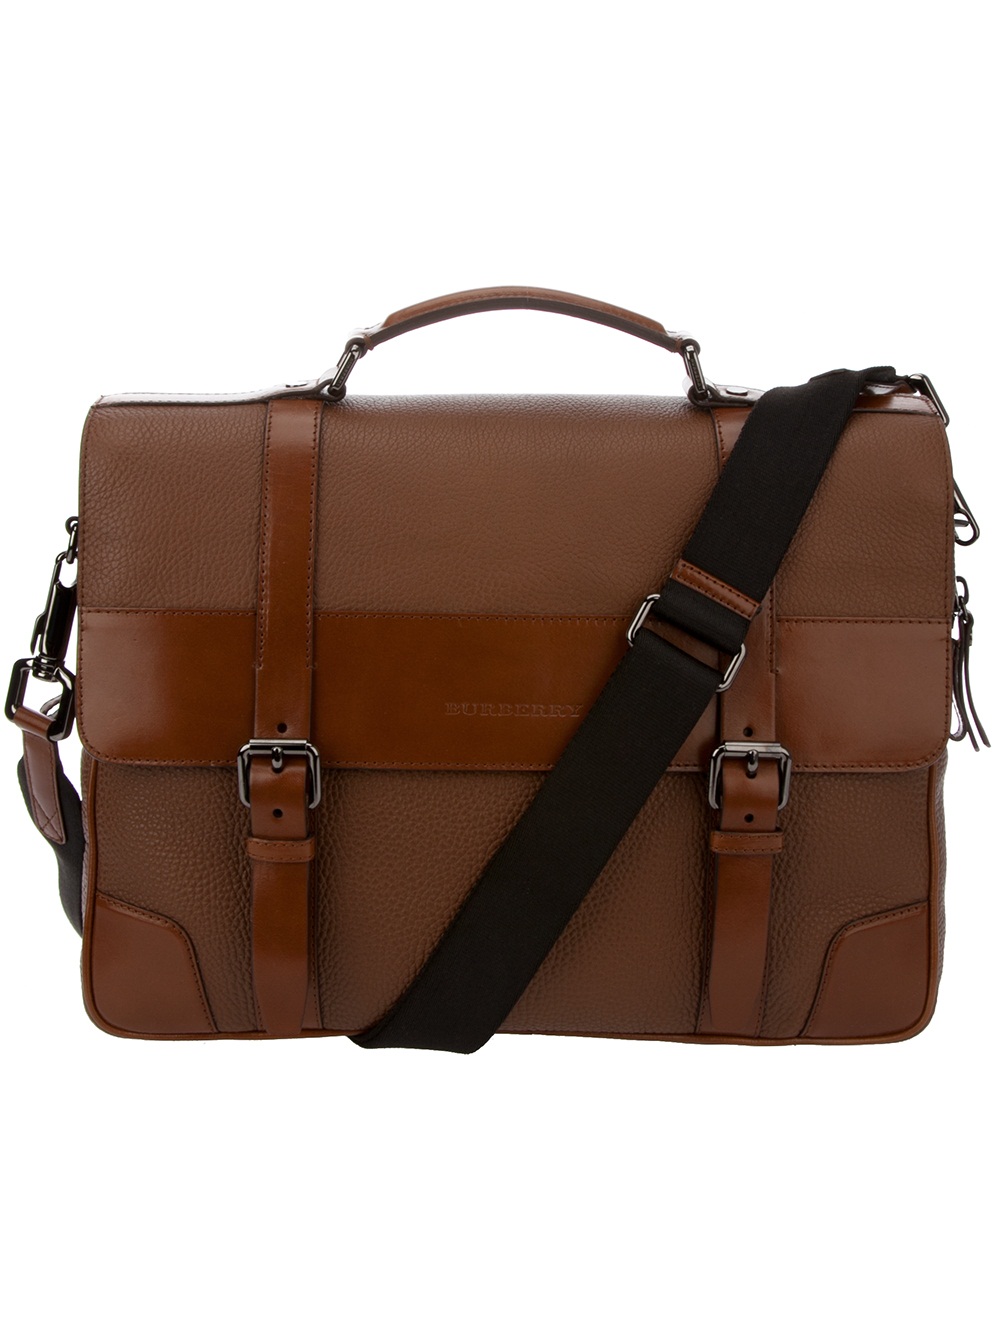 Lyst - Burberry Brit Leather Shoulder Bag in Brown for Men